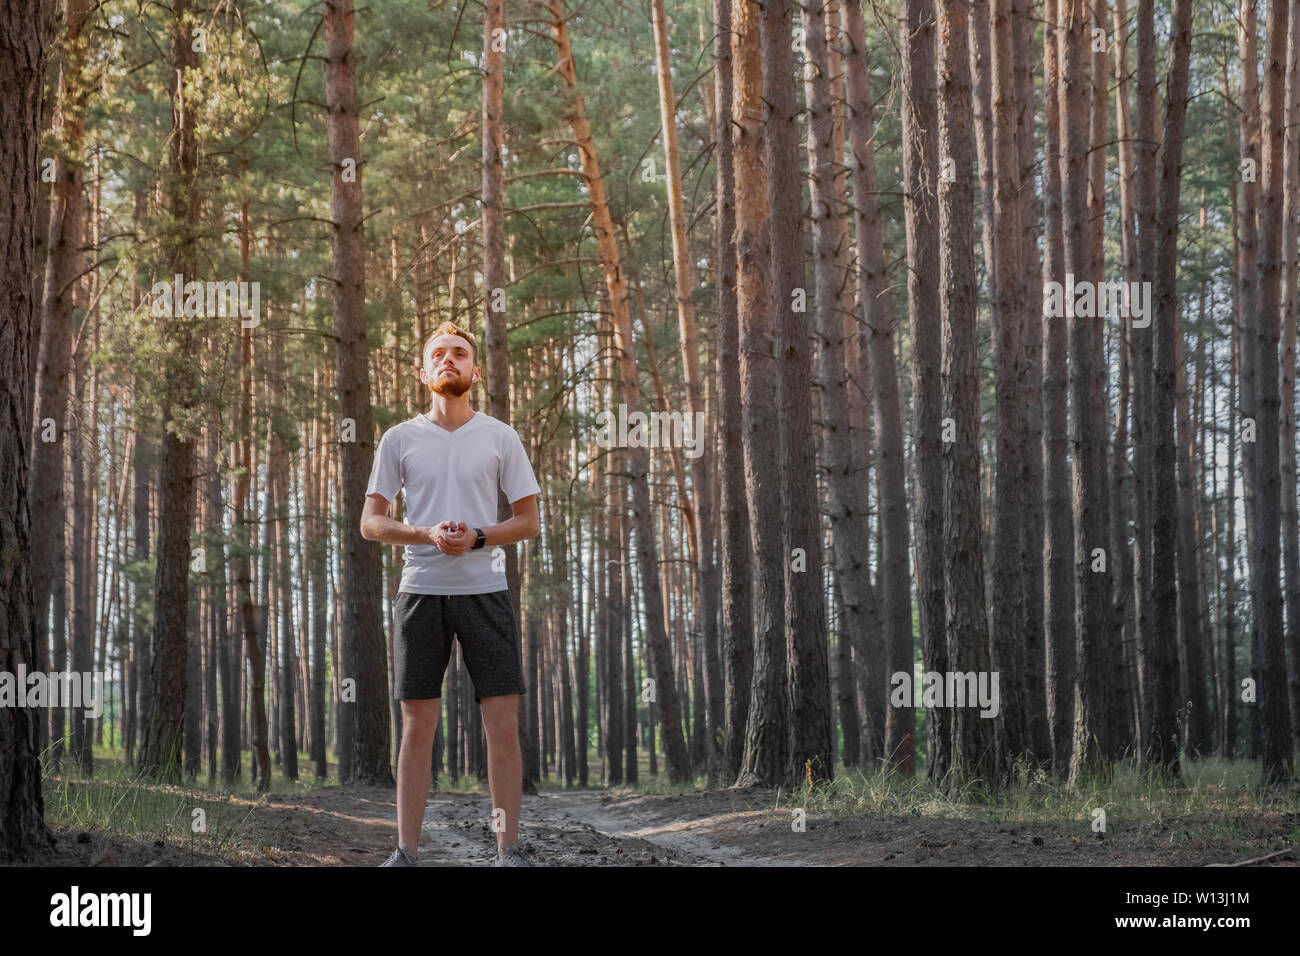 Giovane uomo godendo della natura durante un periodo di riposo a fare jogging nella foresta. Ritratto di una persona di sesso maschile in piedi in una foresta di pini in una giornata di sole Foto Stock